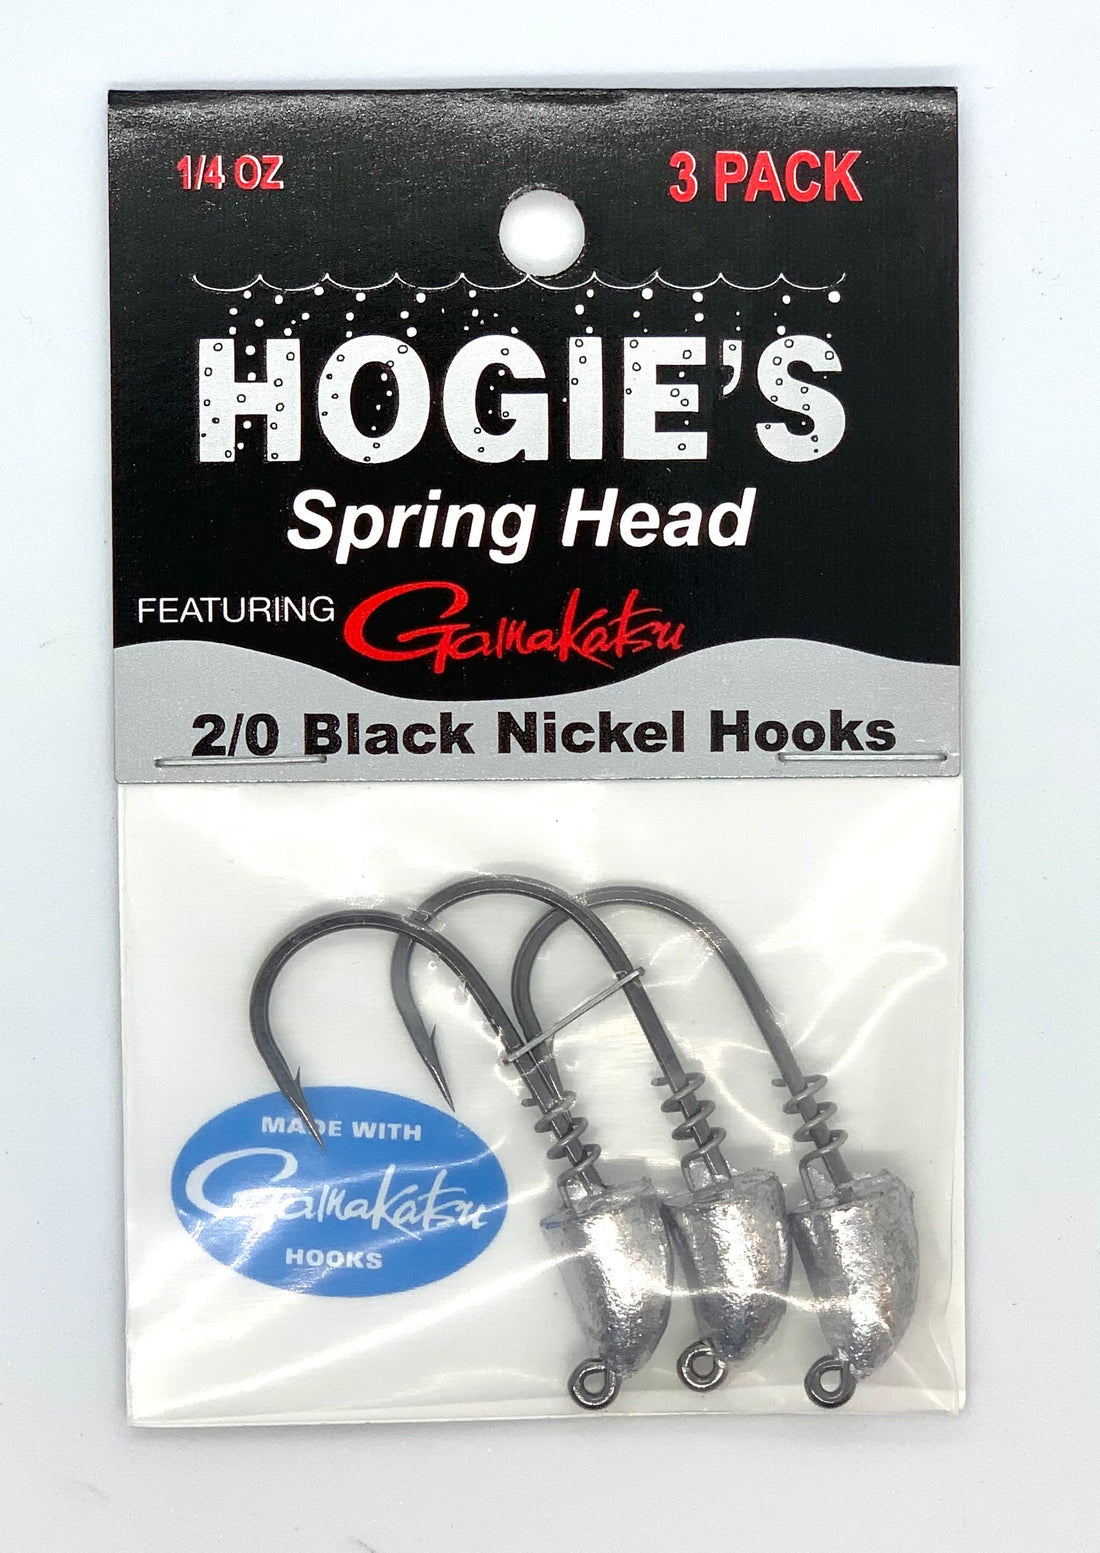 Hogie's Silver Spring Head -2/0 Black Nickel Hooks